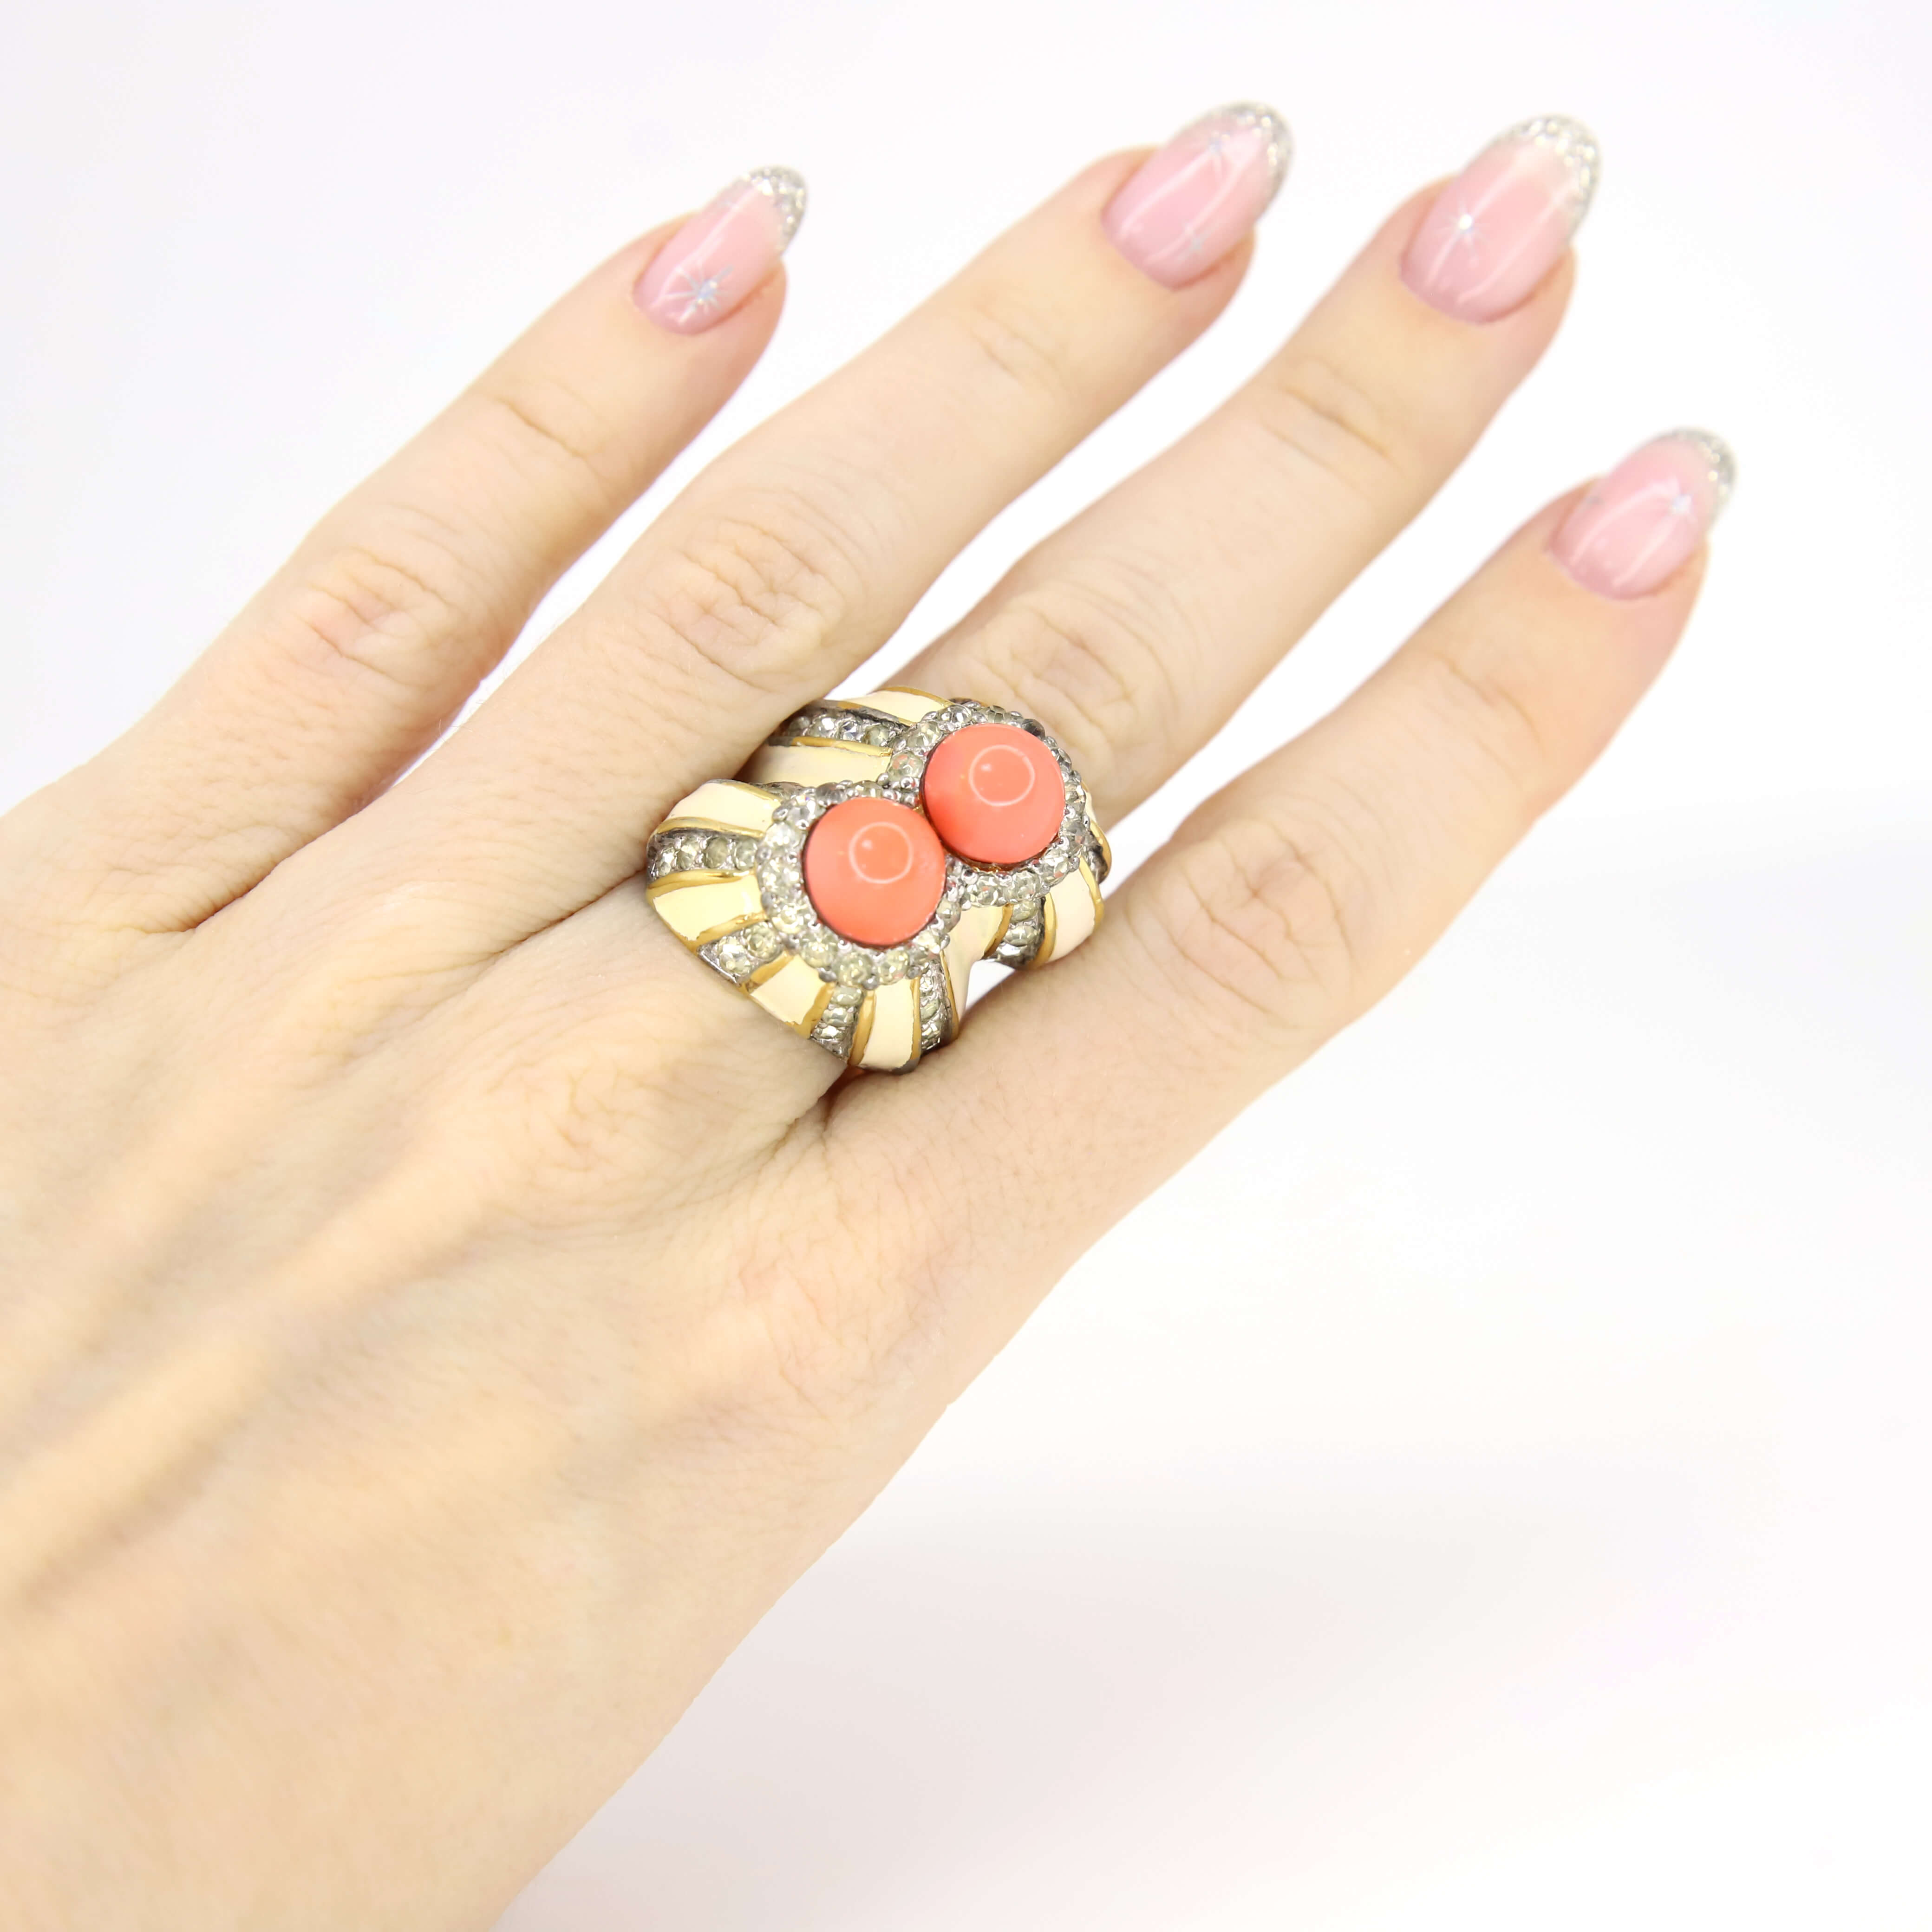 Винтажное кольцо Jomaz размер 17, цвет Оранжевый, фото 1